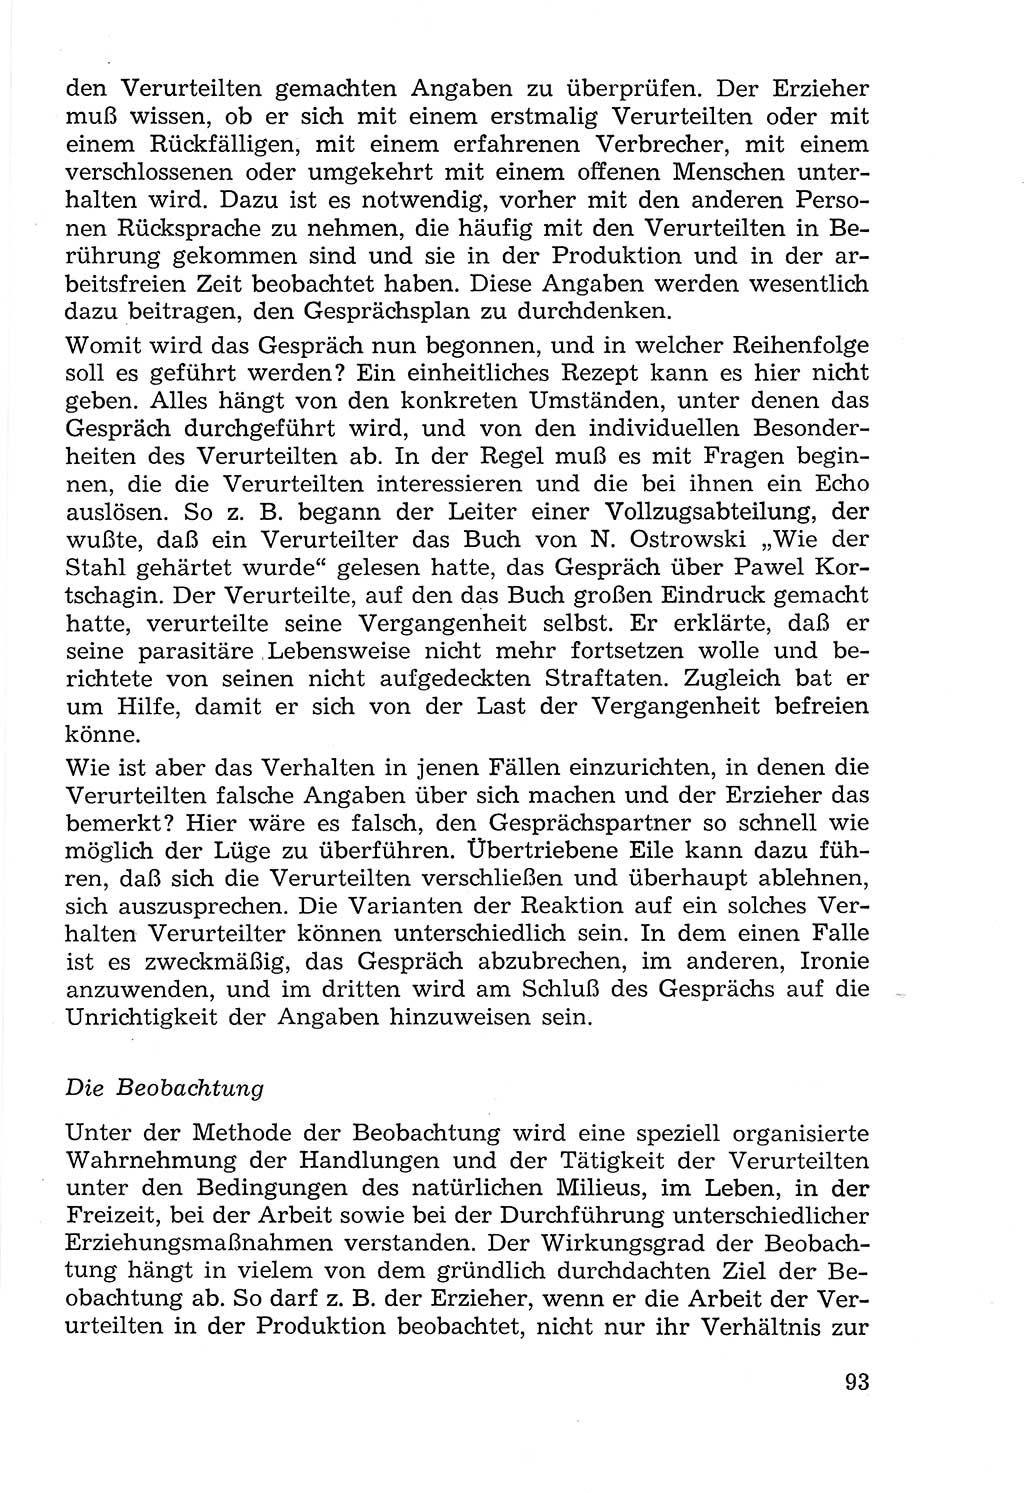 Lehrbuch der Strafvollzugspädagogik [Deutsche Demokratische Republik (DDR)] 1969, Seite 93 (Lb. SV-Pd. DDR 1969, S. 93)